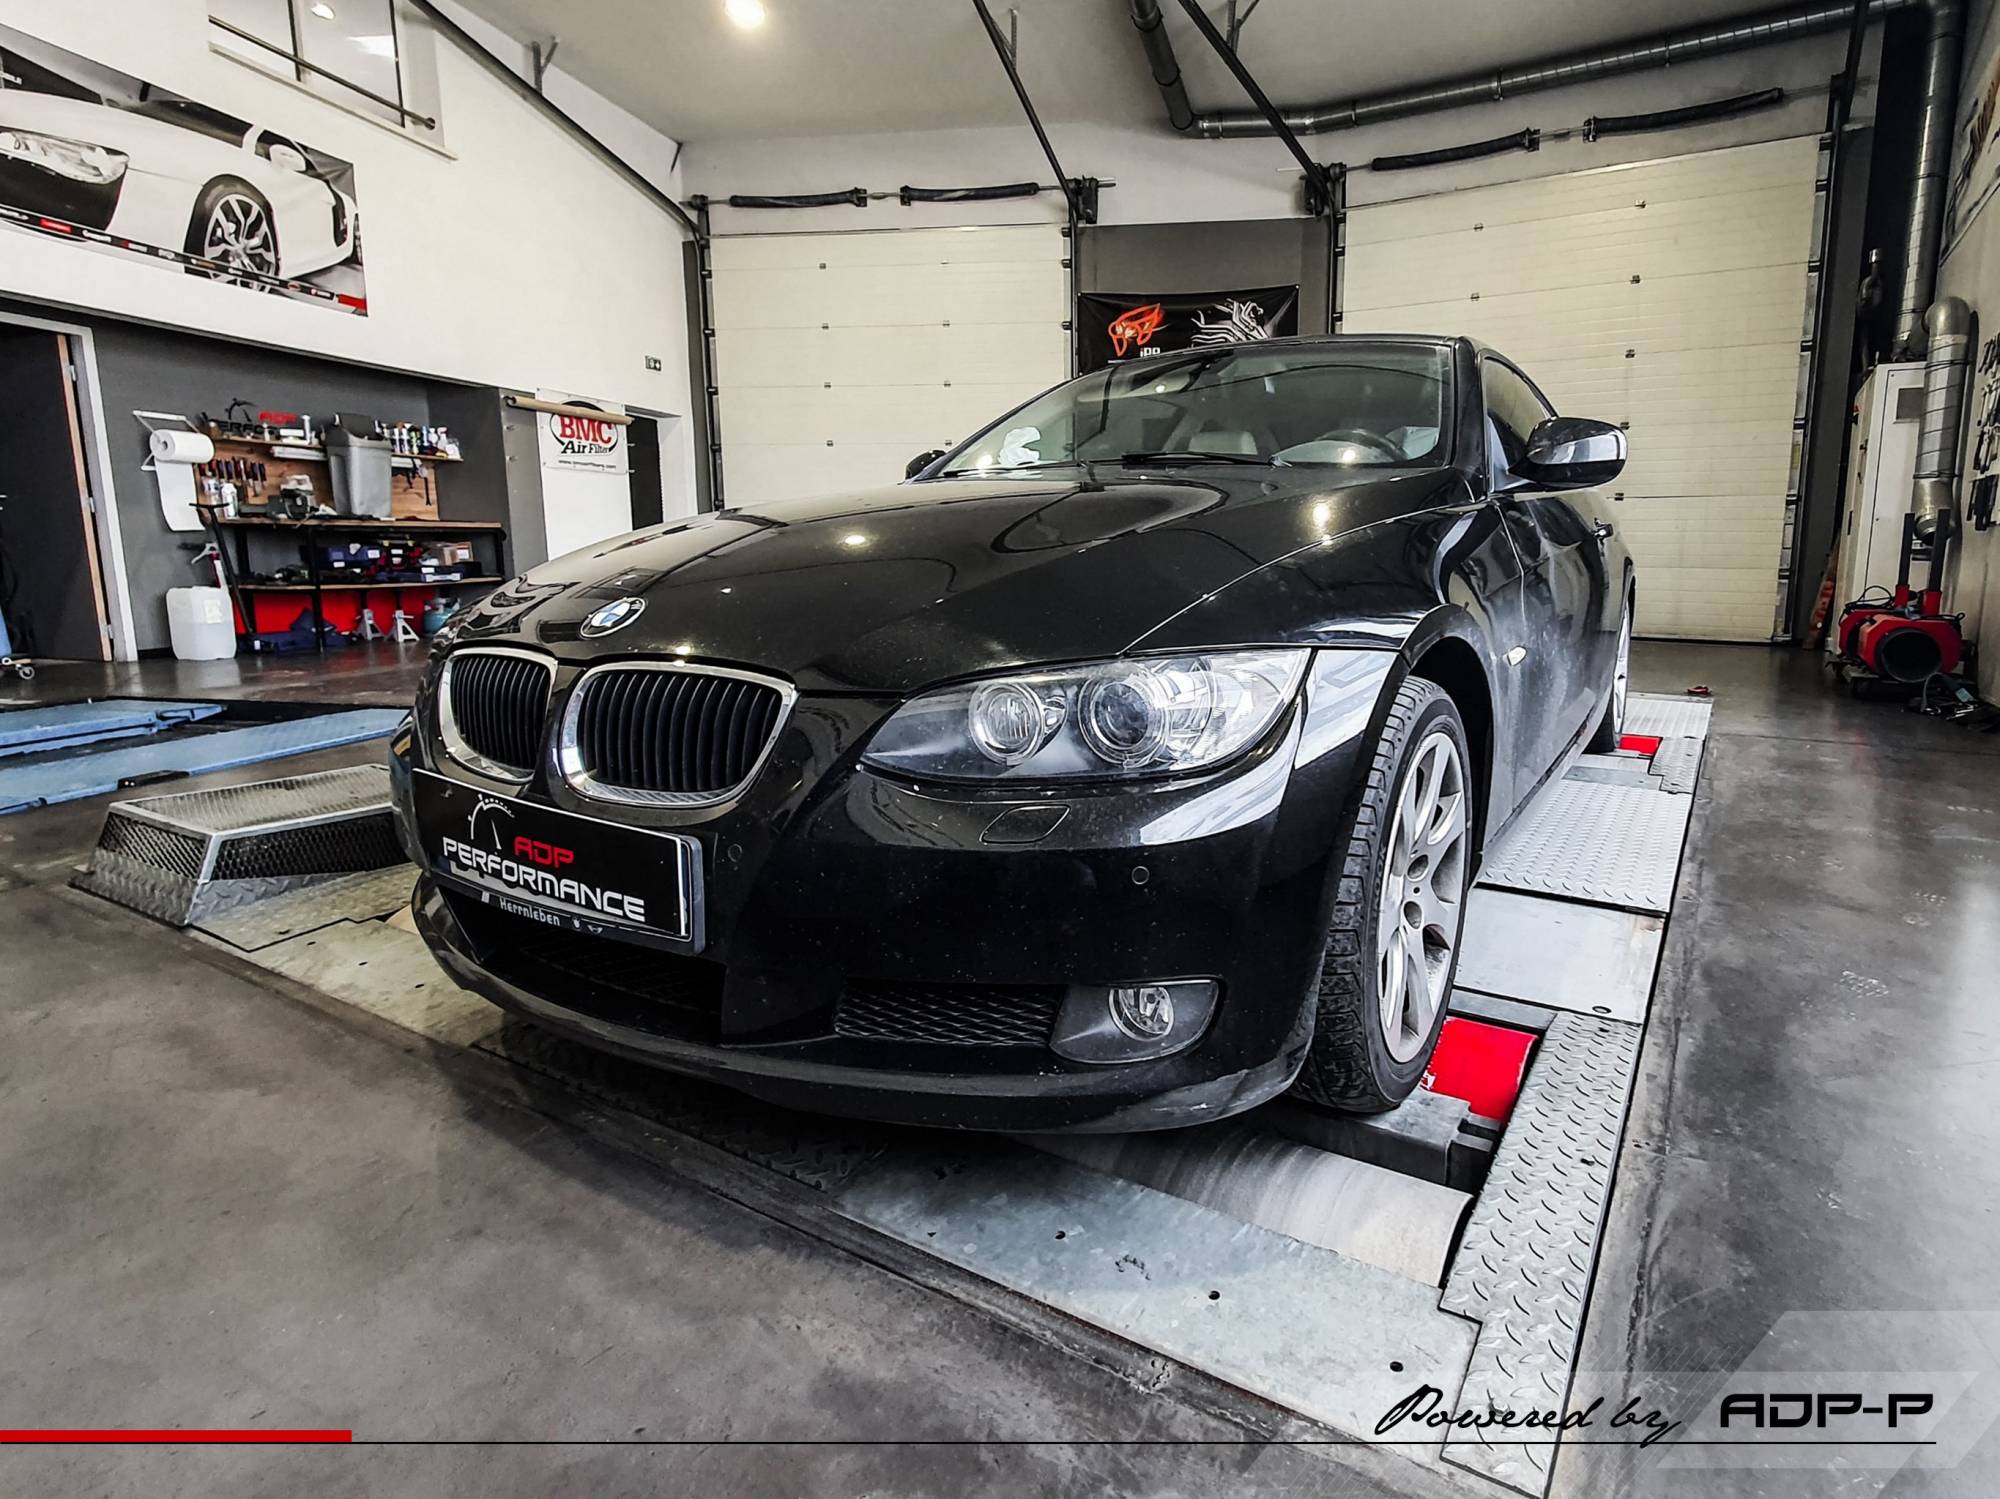 Préparation moteur stage 2 BMW 320d E92 | ADP performance Bouche du rhônes